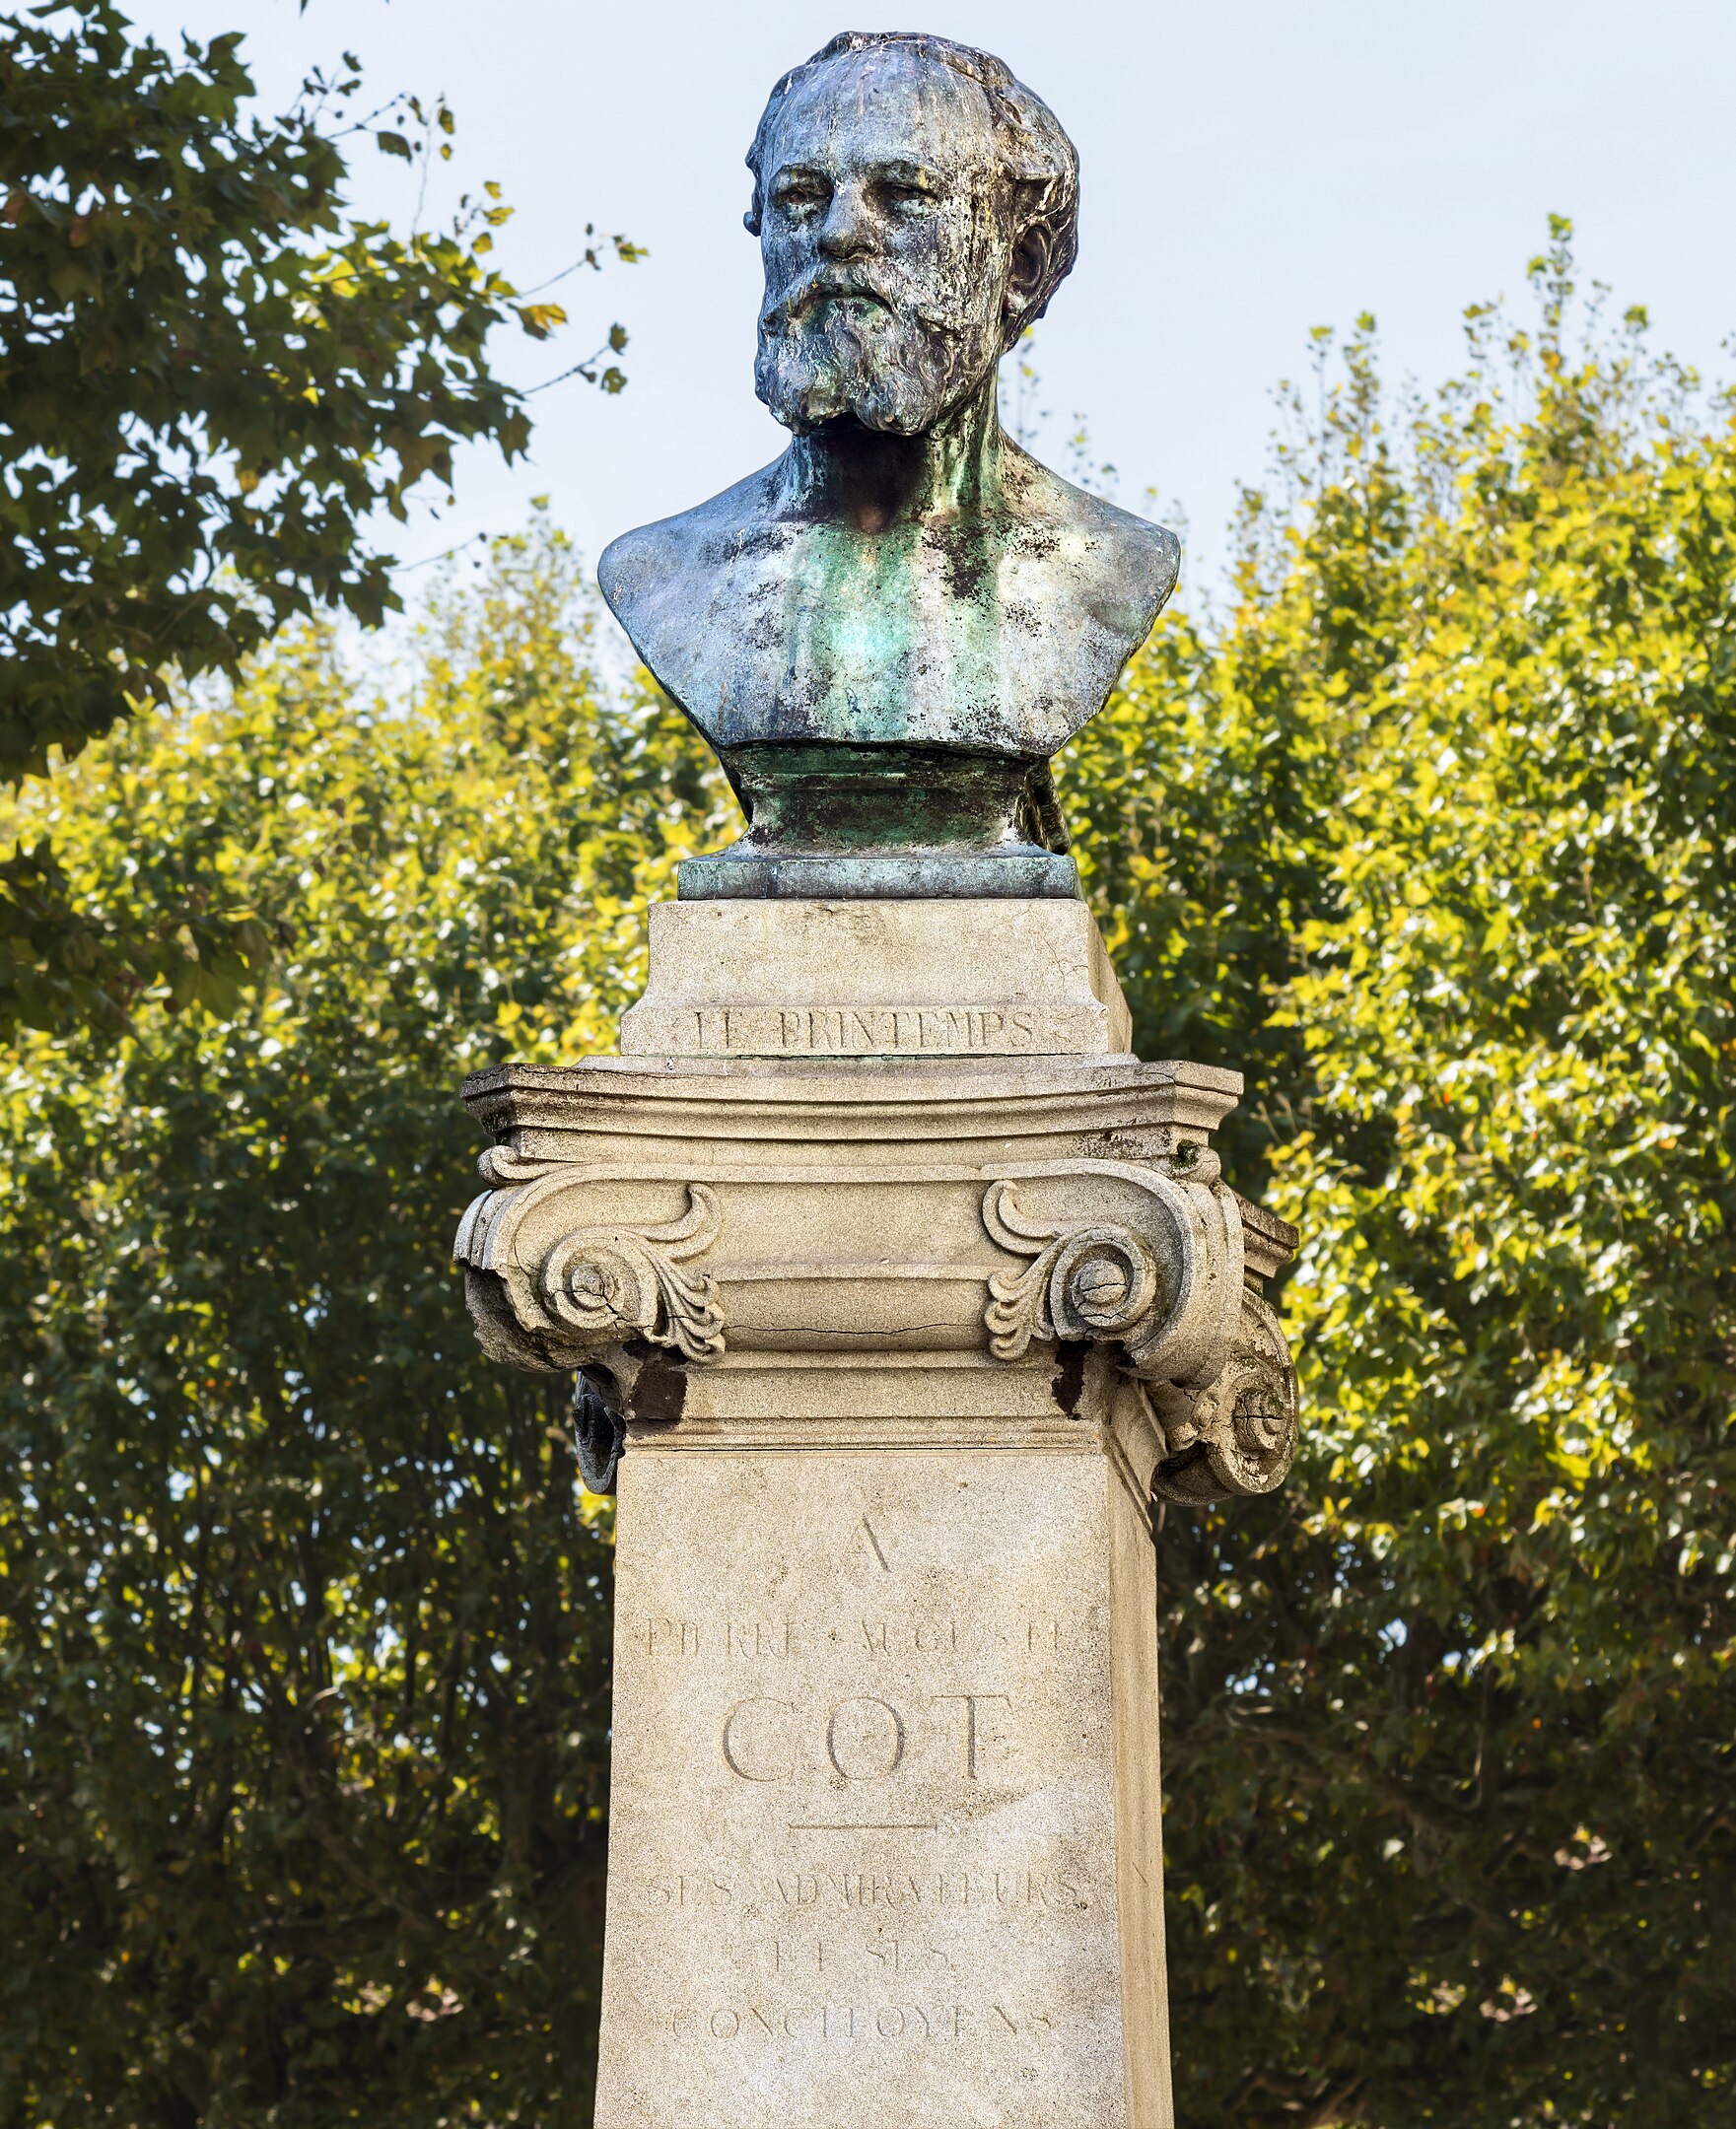 Πιερ Ωγκύστ Κοτ - 17 Φεβρουαρίου 1837 - 2 Αυγούστου 1883